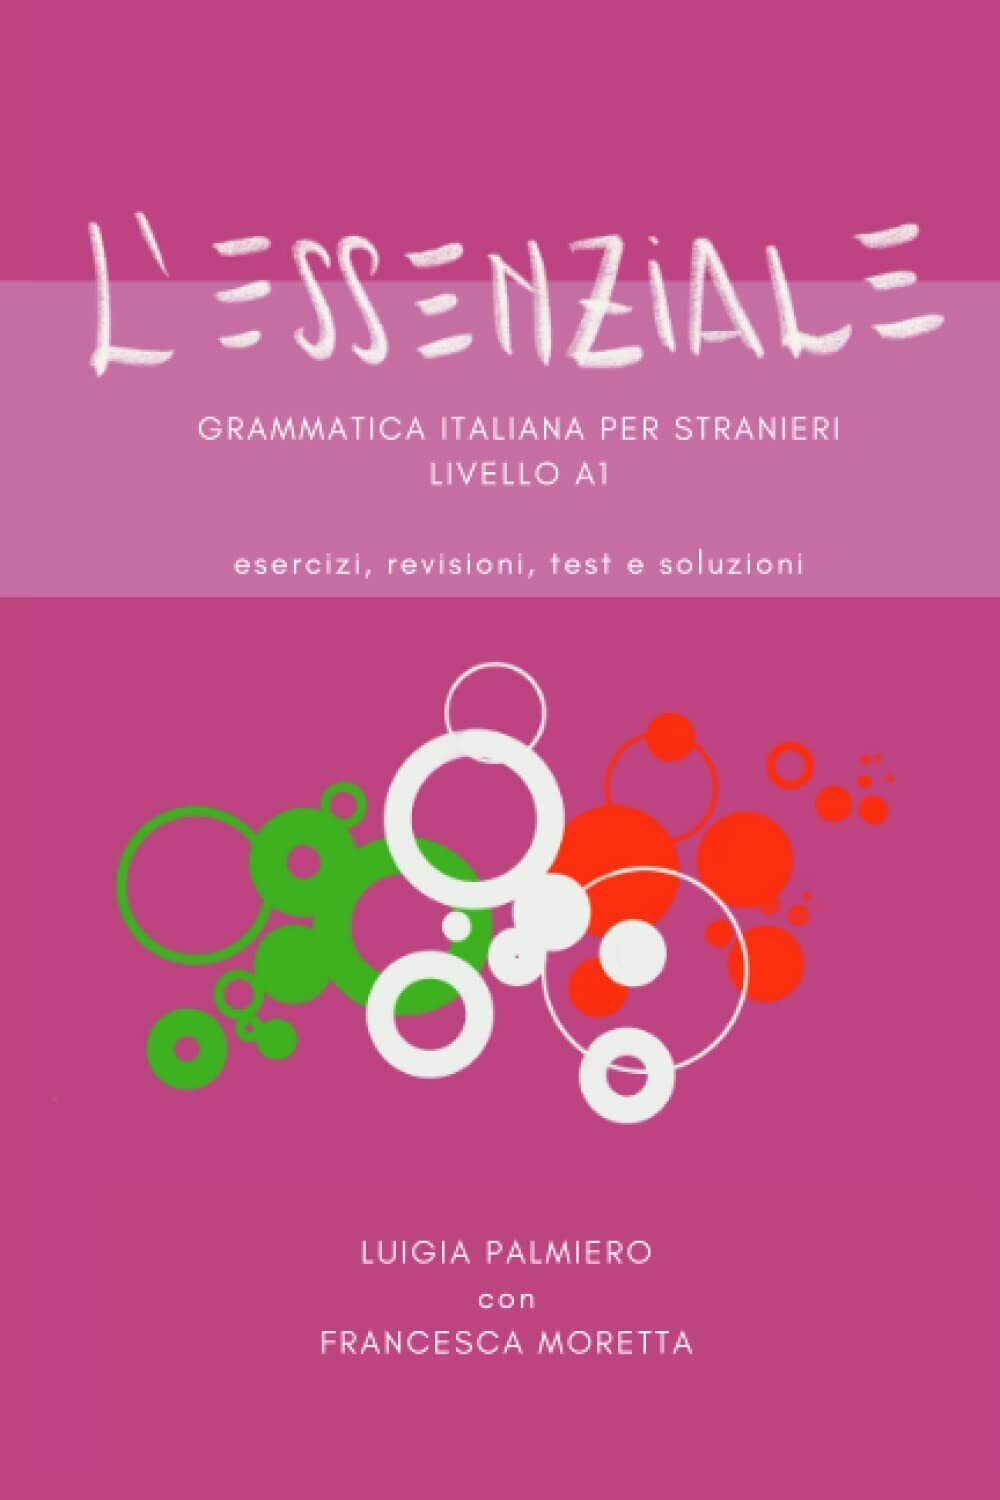 L'ESSENZIALE: Grammatica italiana per stranieri, livello A1 di Luigia Palmiero,  libro usato